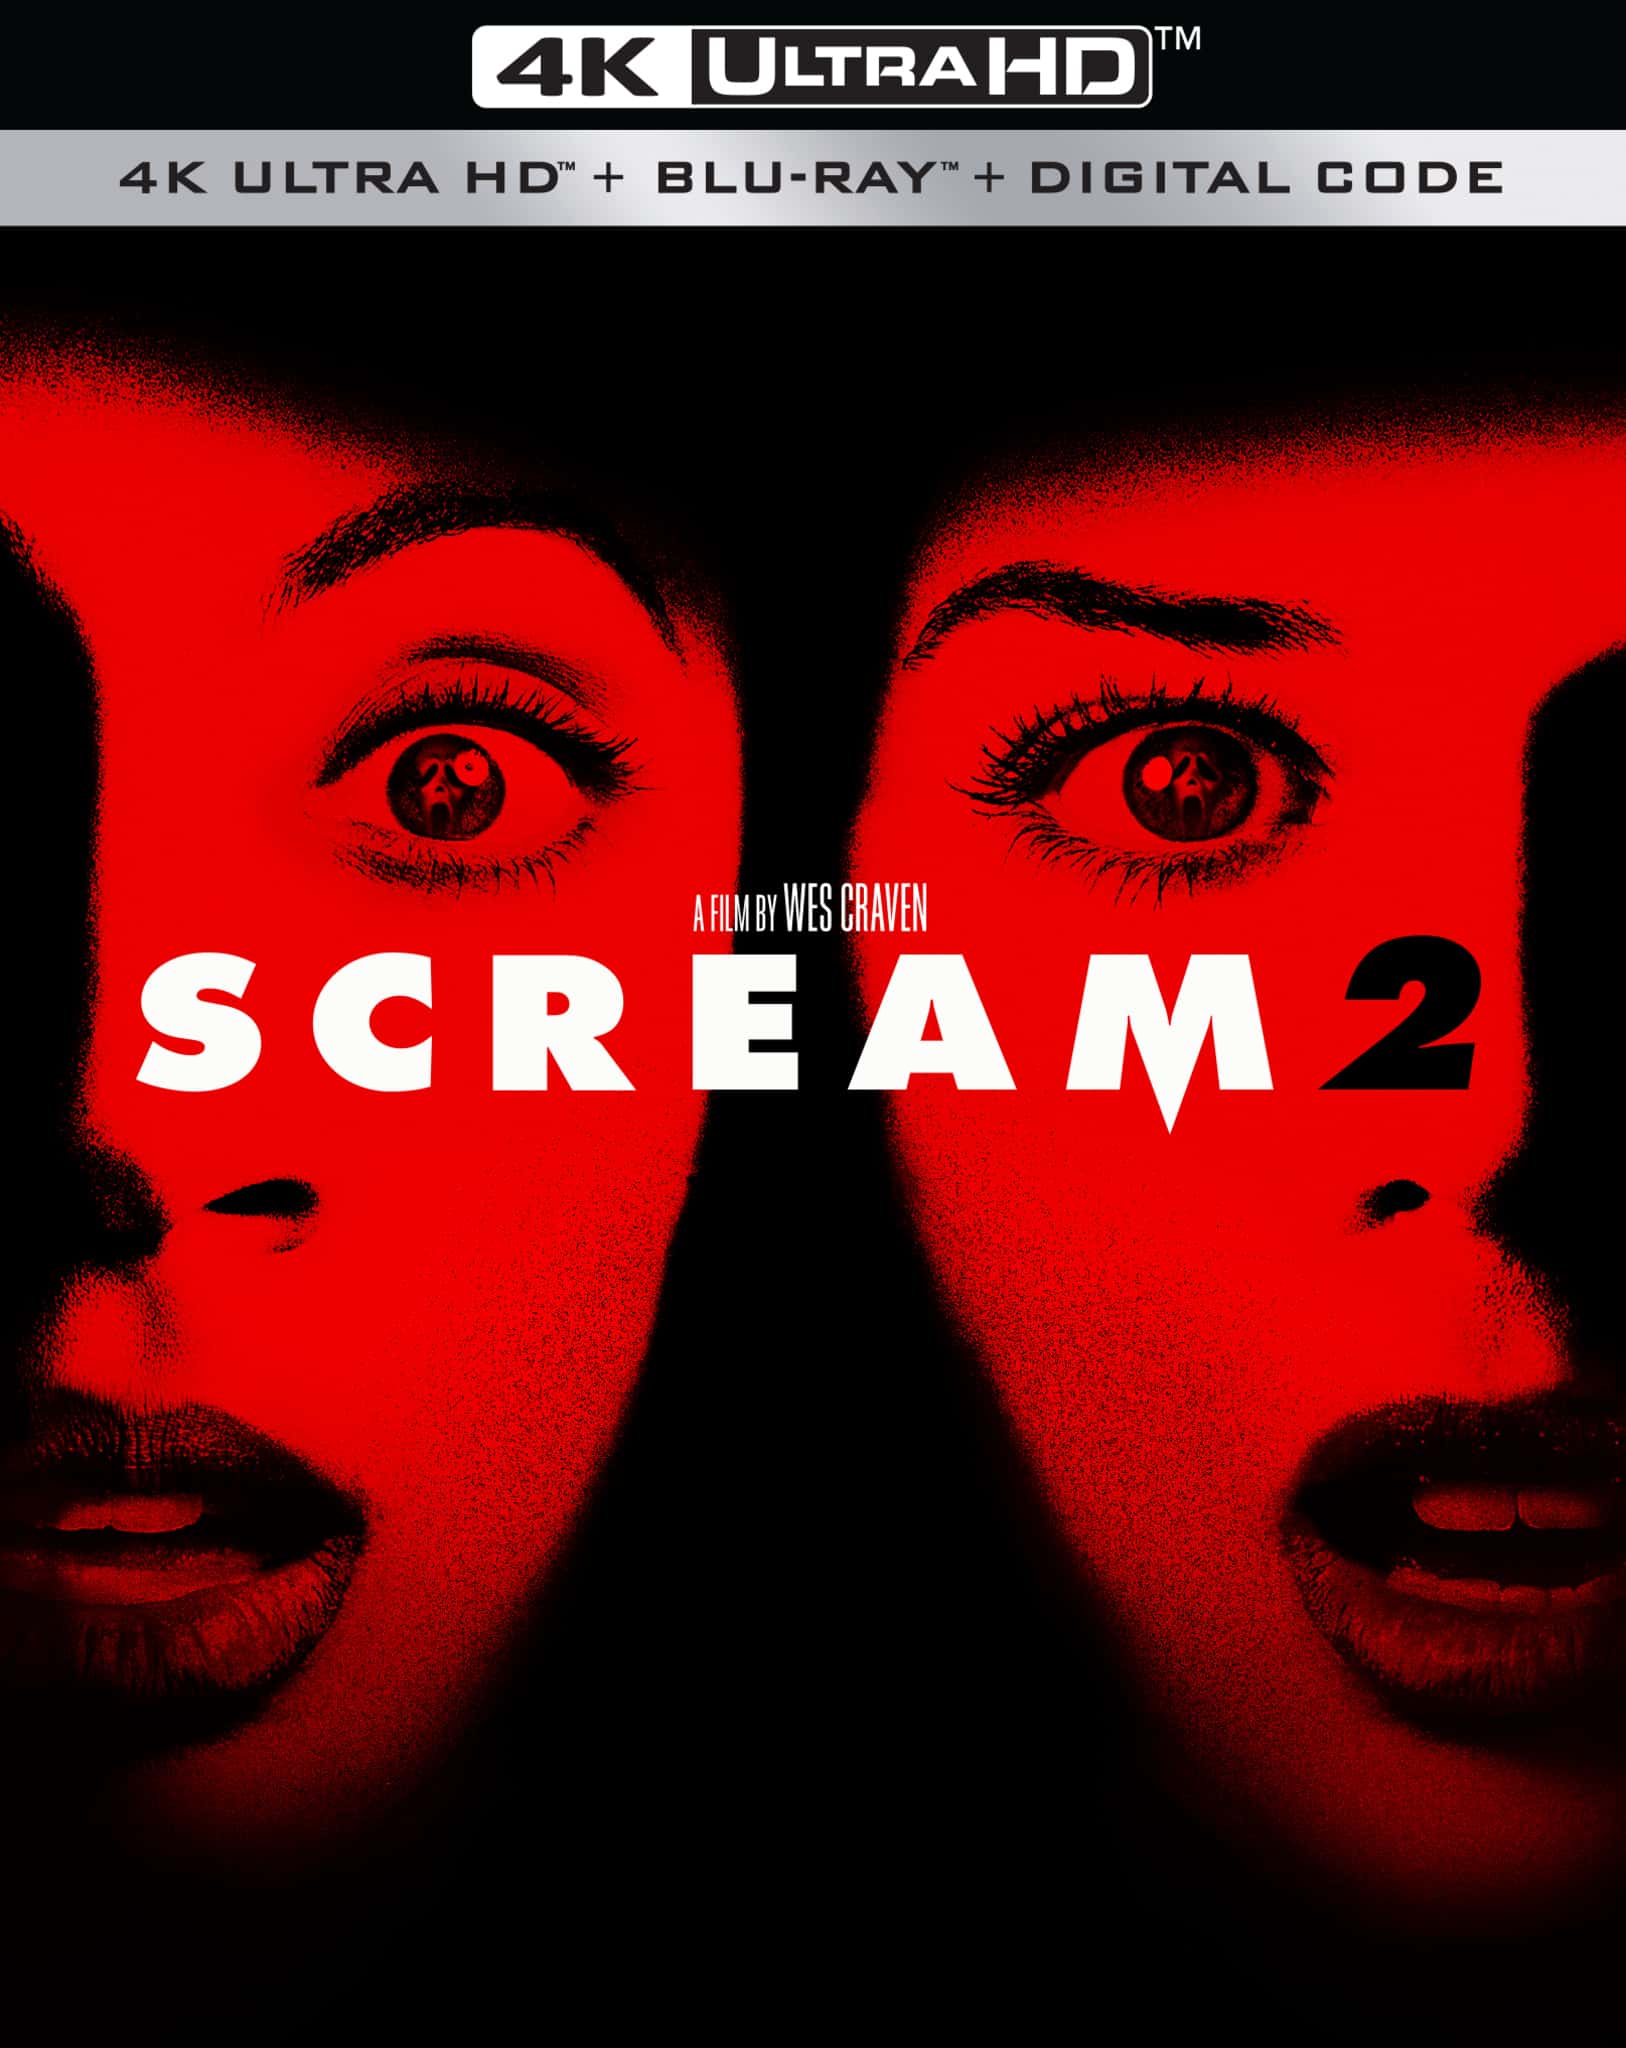 Scream 2 comes to 4K UHD